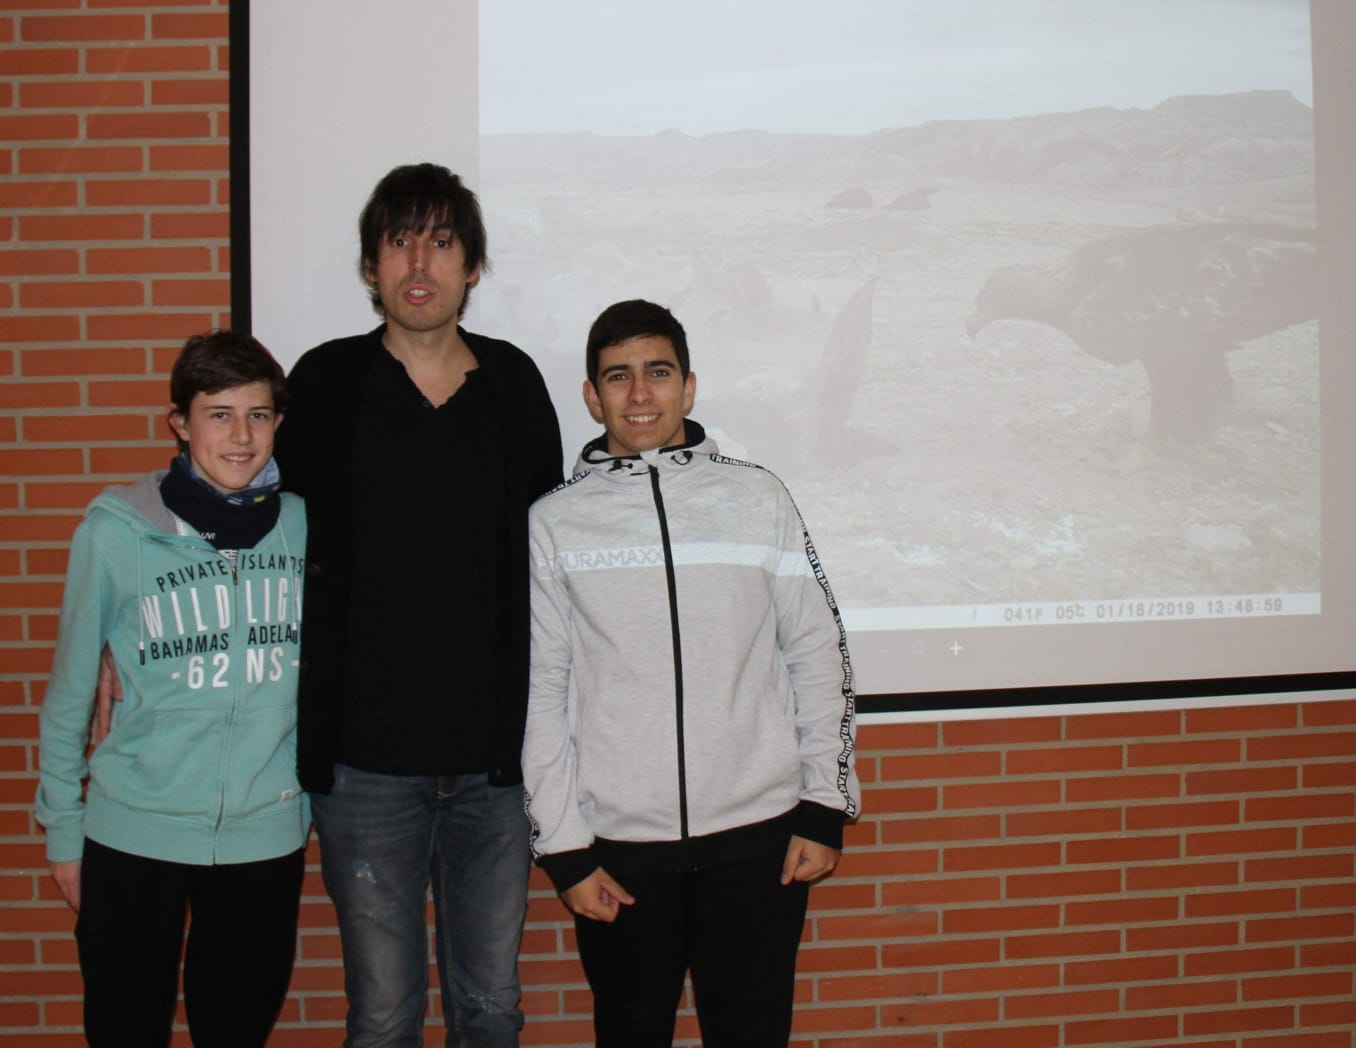 Concedida una beca de investigación de la Sociedad Española de Ornitología a dos alumnos del Instituto Valle del Ebro